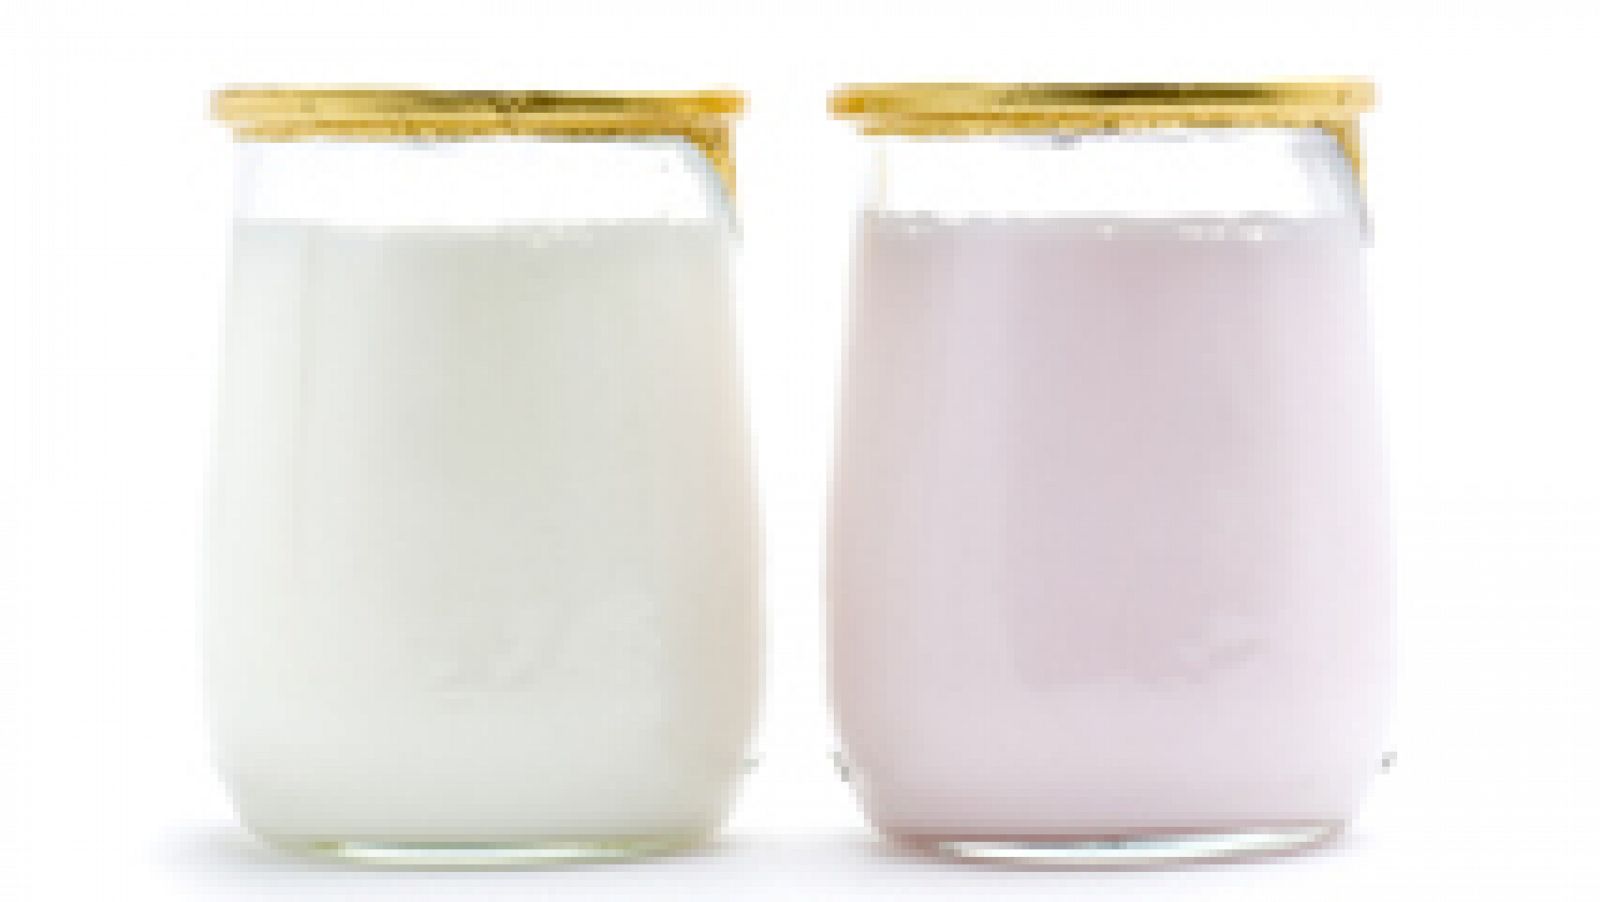 Mitos sobre alimentación: El líquido del yogurt es malo y no hay que tomarlo